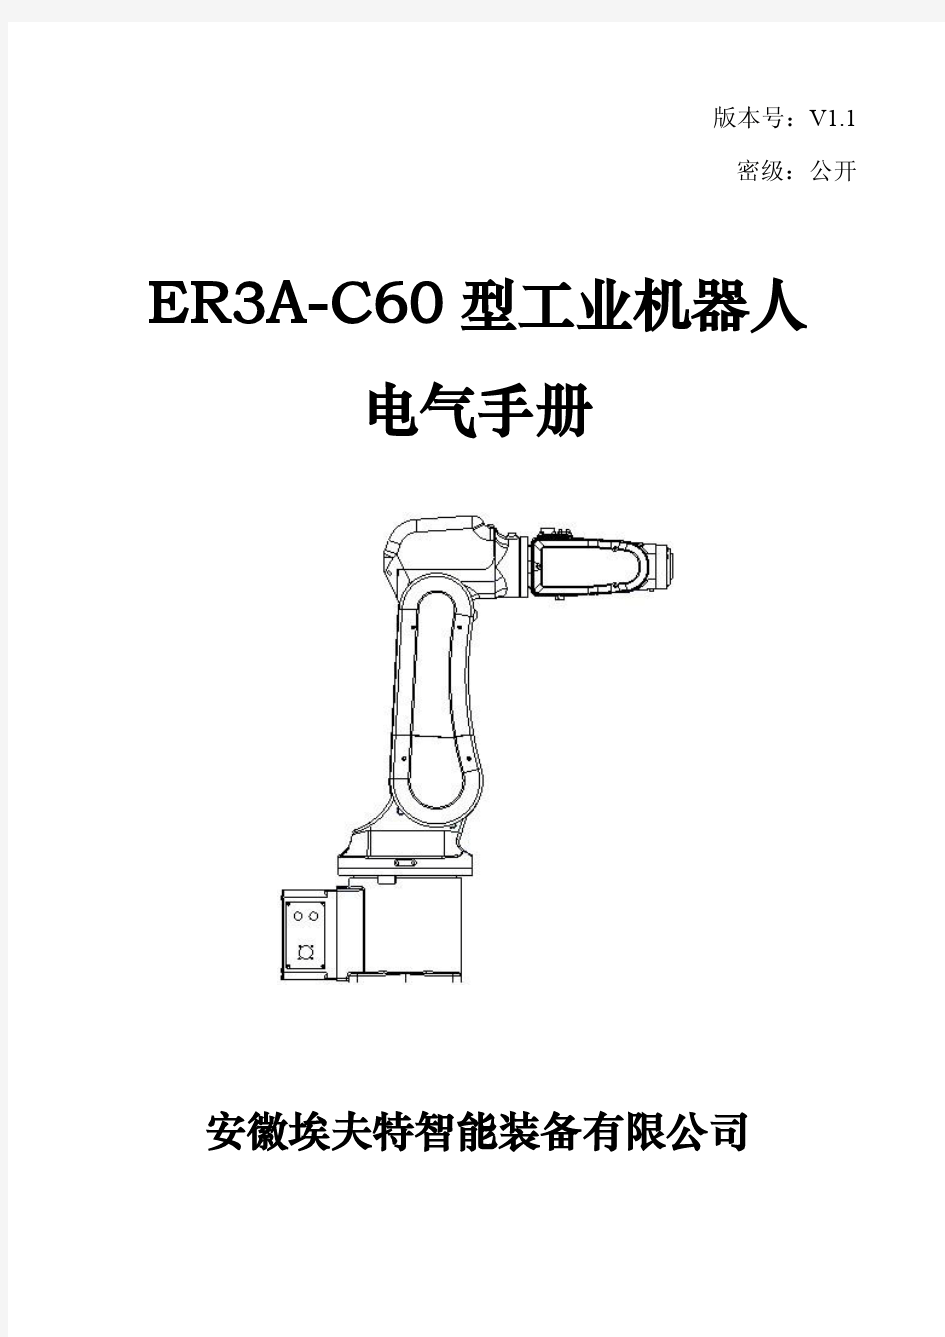 ER3A-C60电气维护手册2015-6-23-V1.1